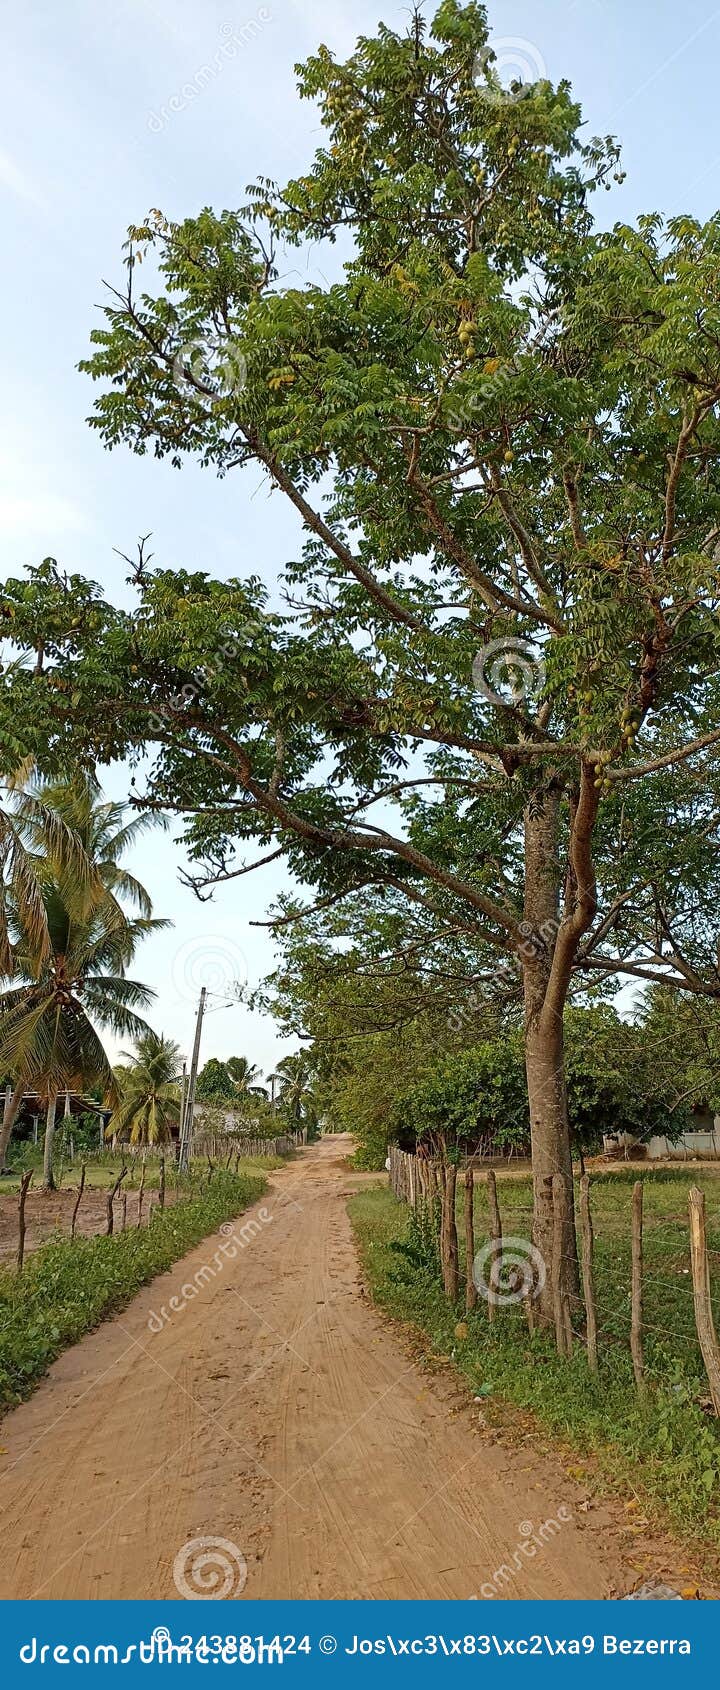 paisagem rural - maxaranguape, rn, brasil